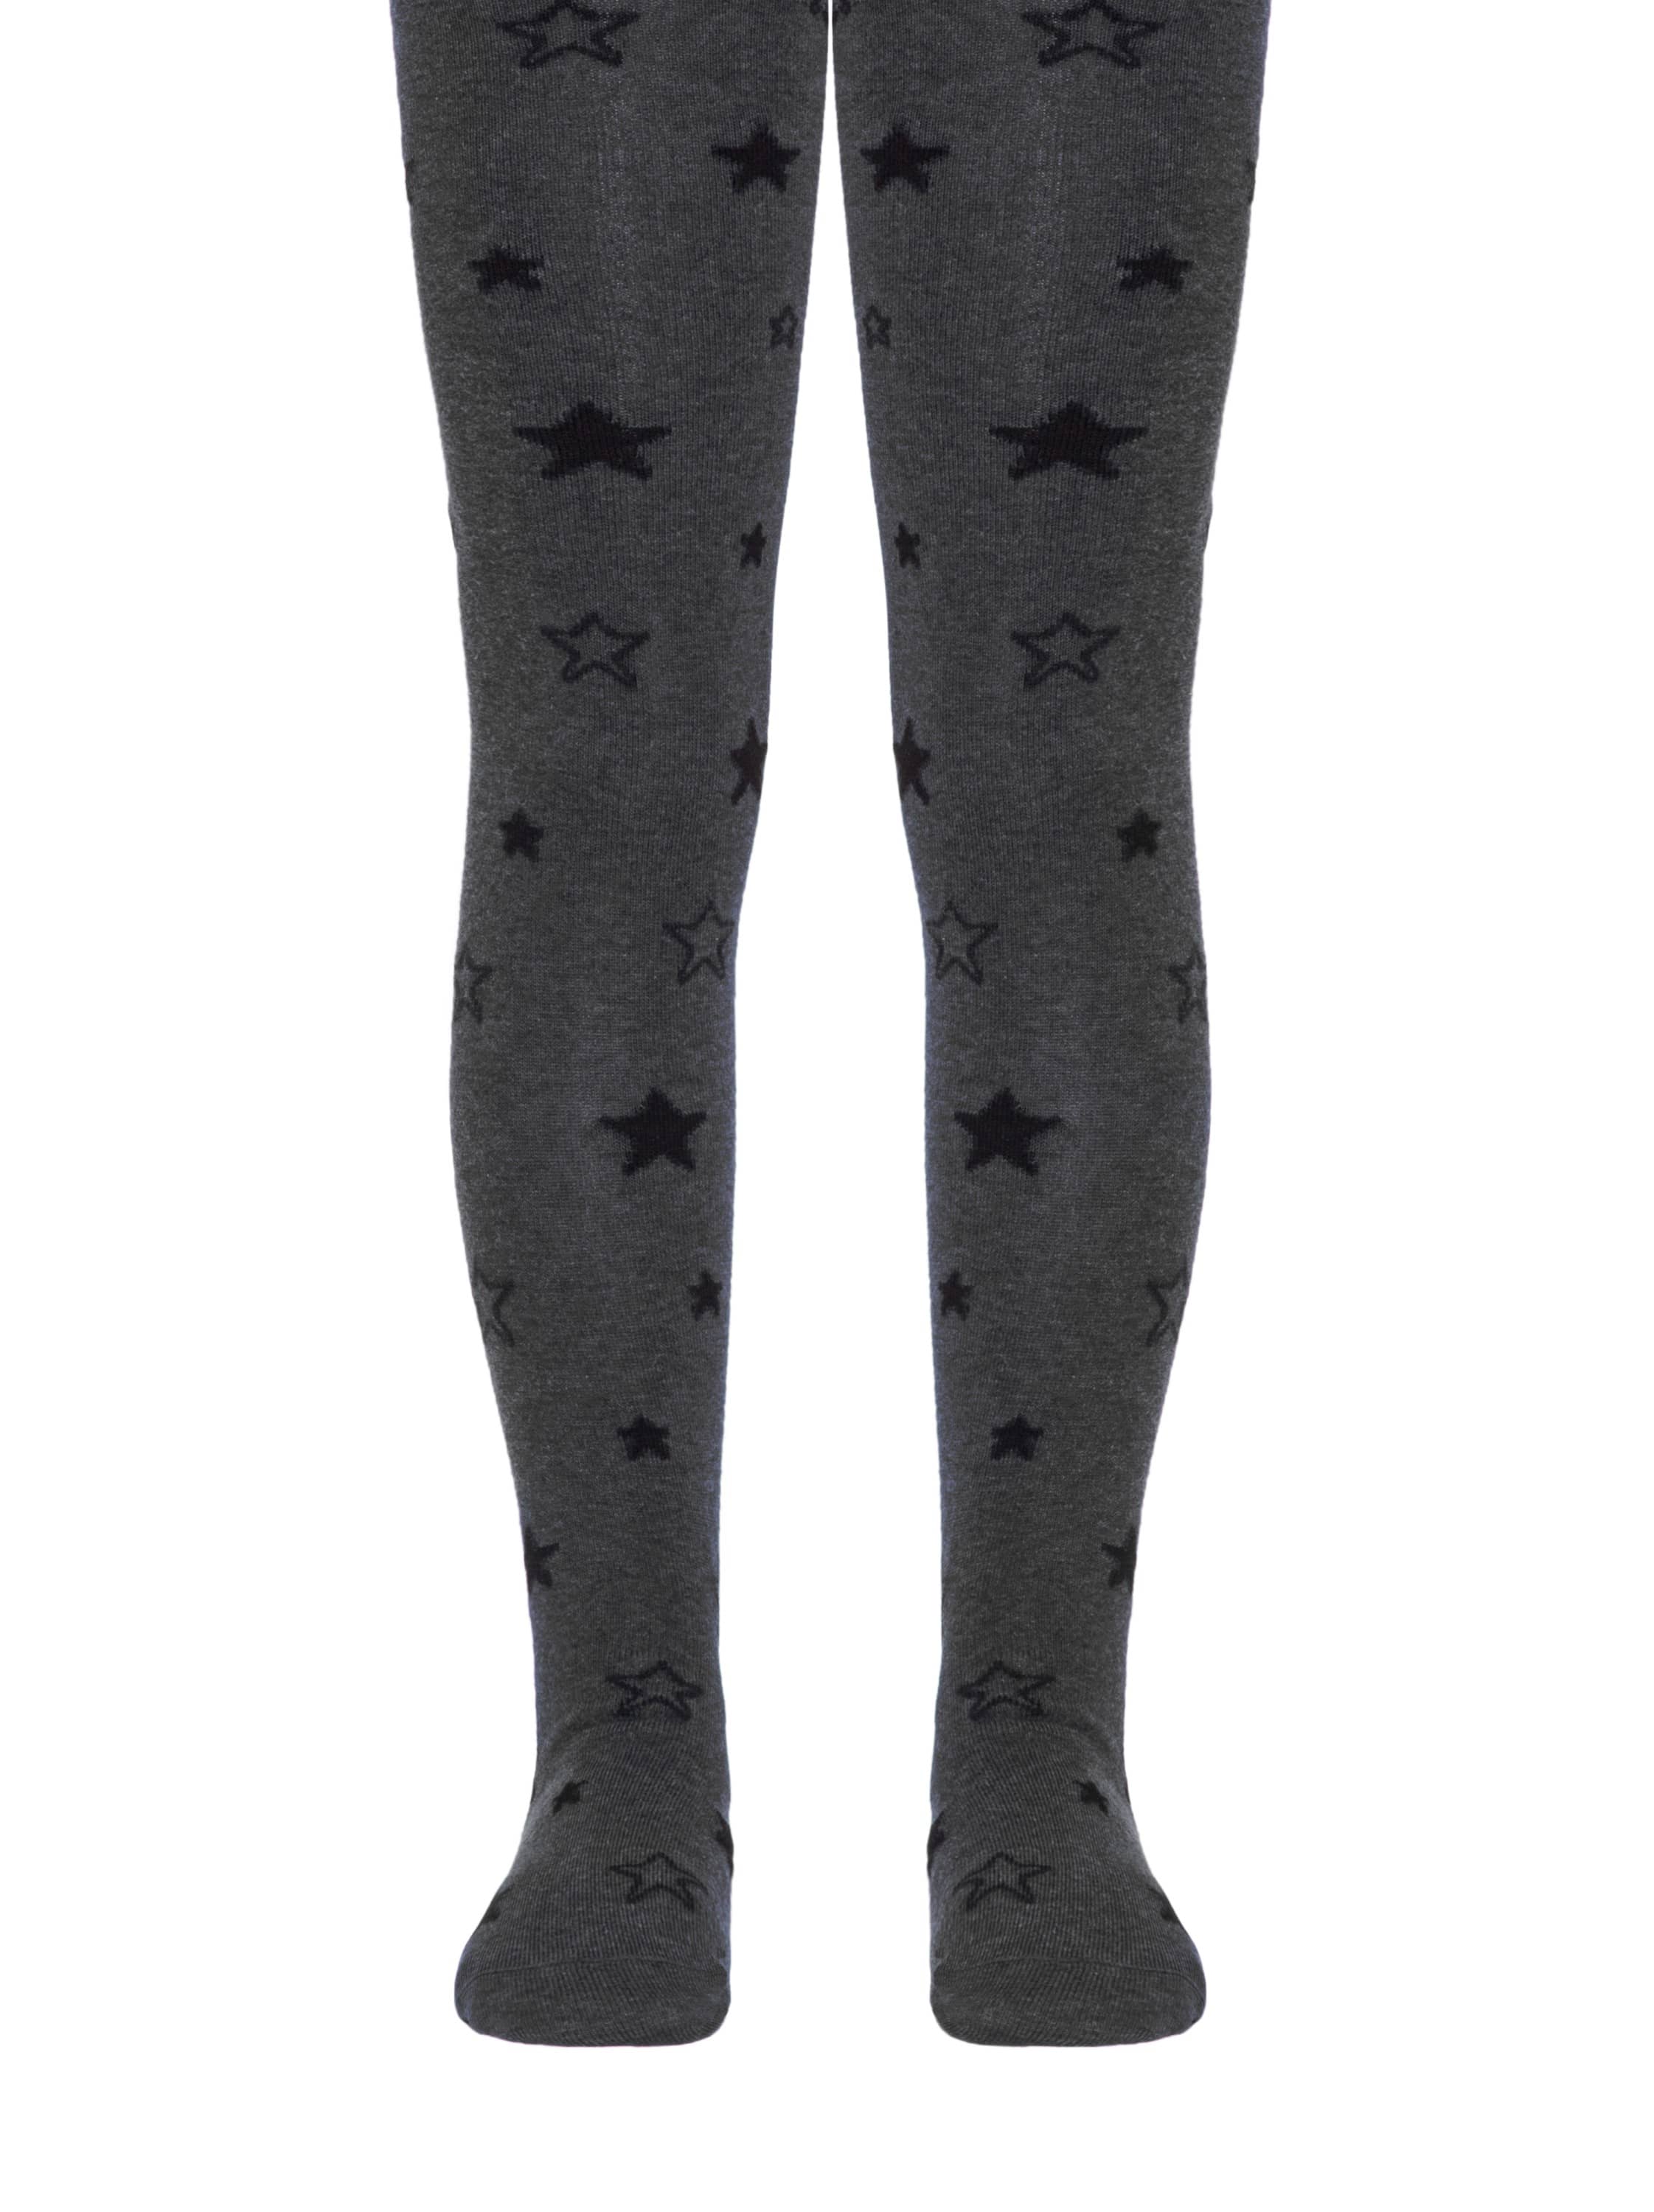 Otroške hlačne nogavice iz bombaža v temno sivi barvi in vzorcem v obliki zvezdic Conte Kids Zvezdice